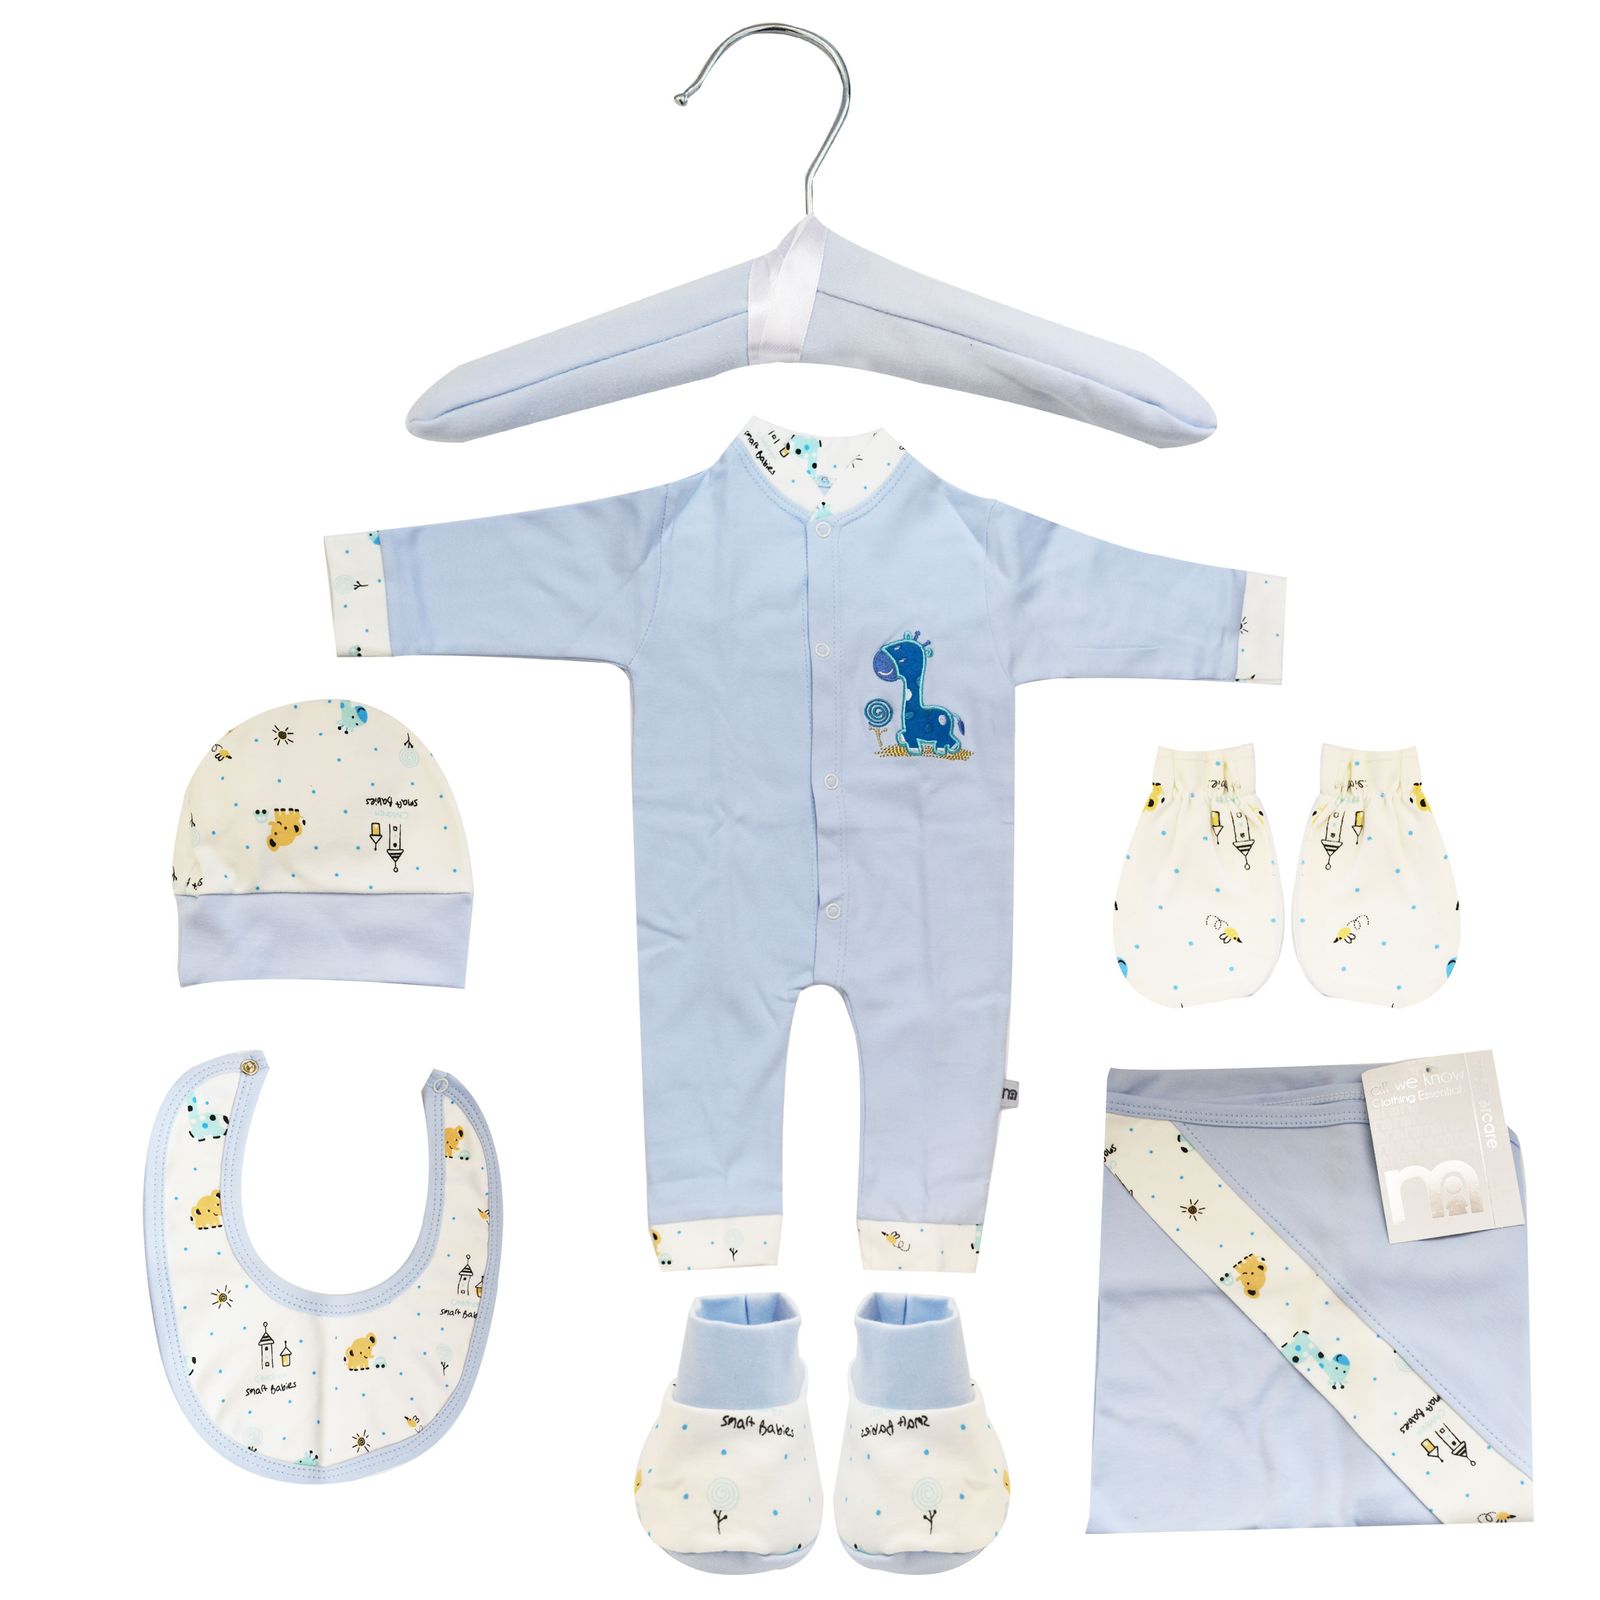 ست 7 تکه لباس نوزادی مادرکر طرح زرافه کد M454.6 -  - 1